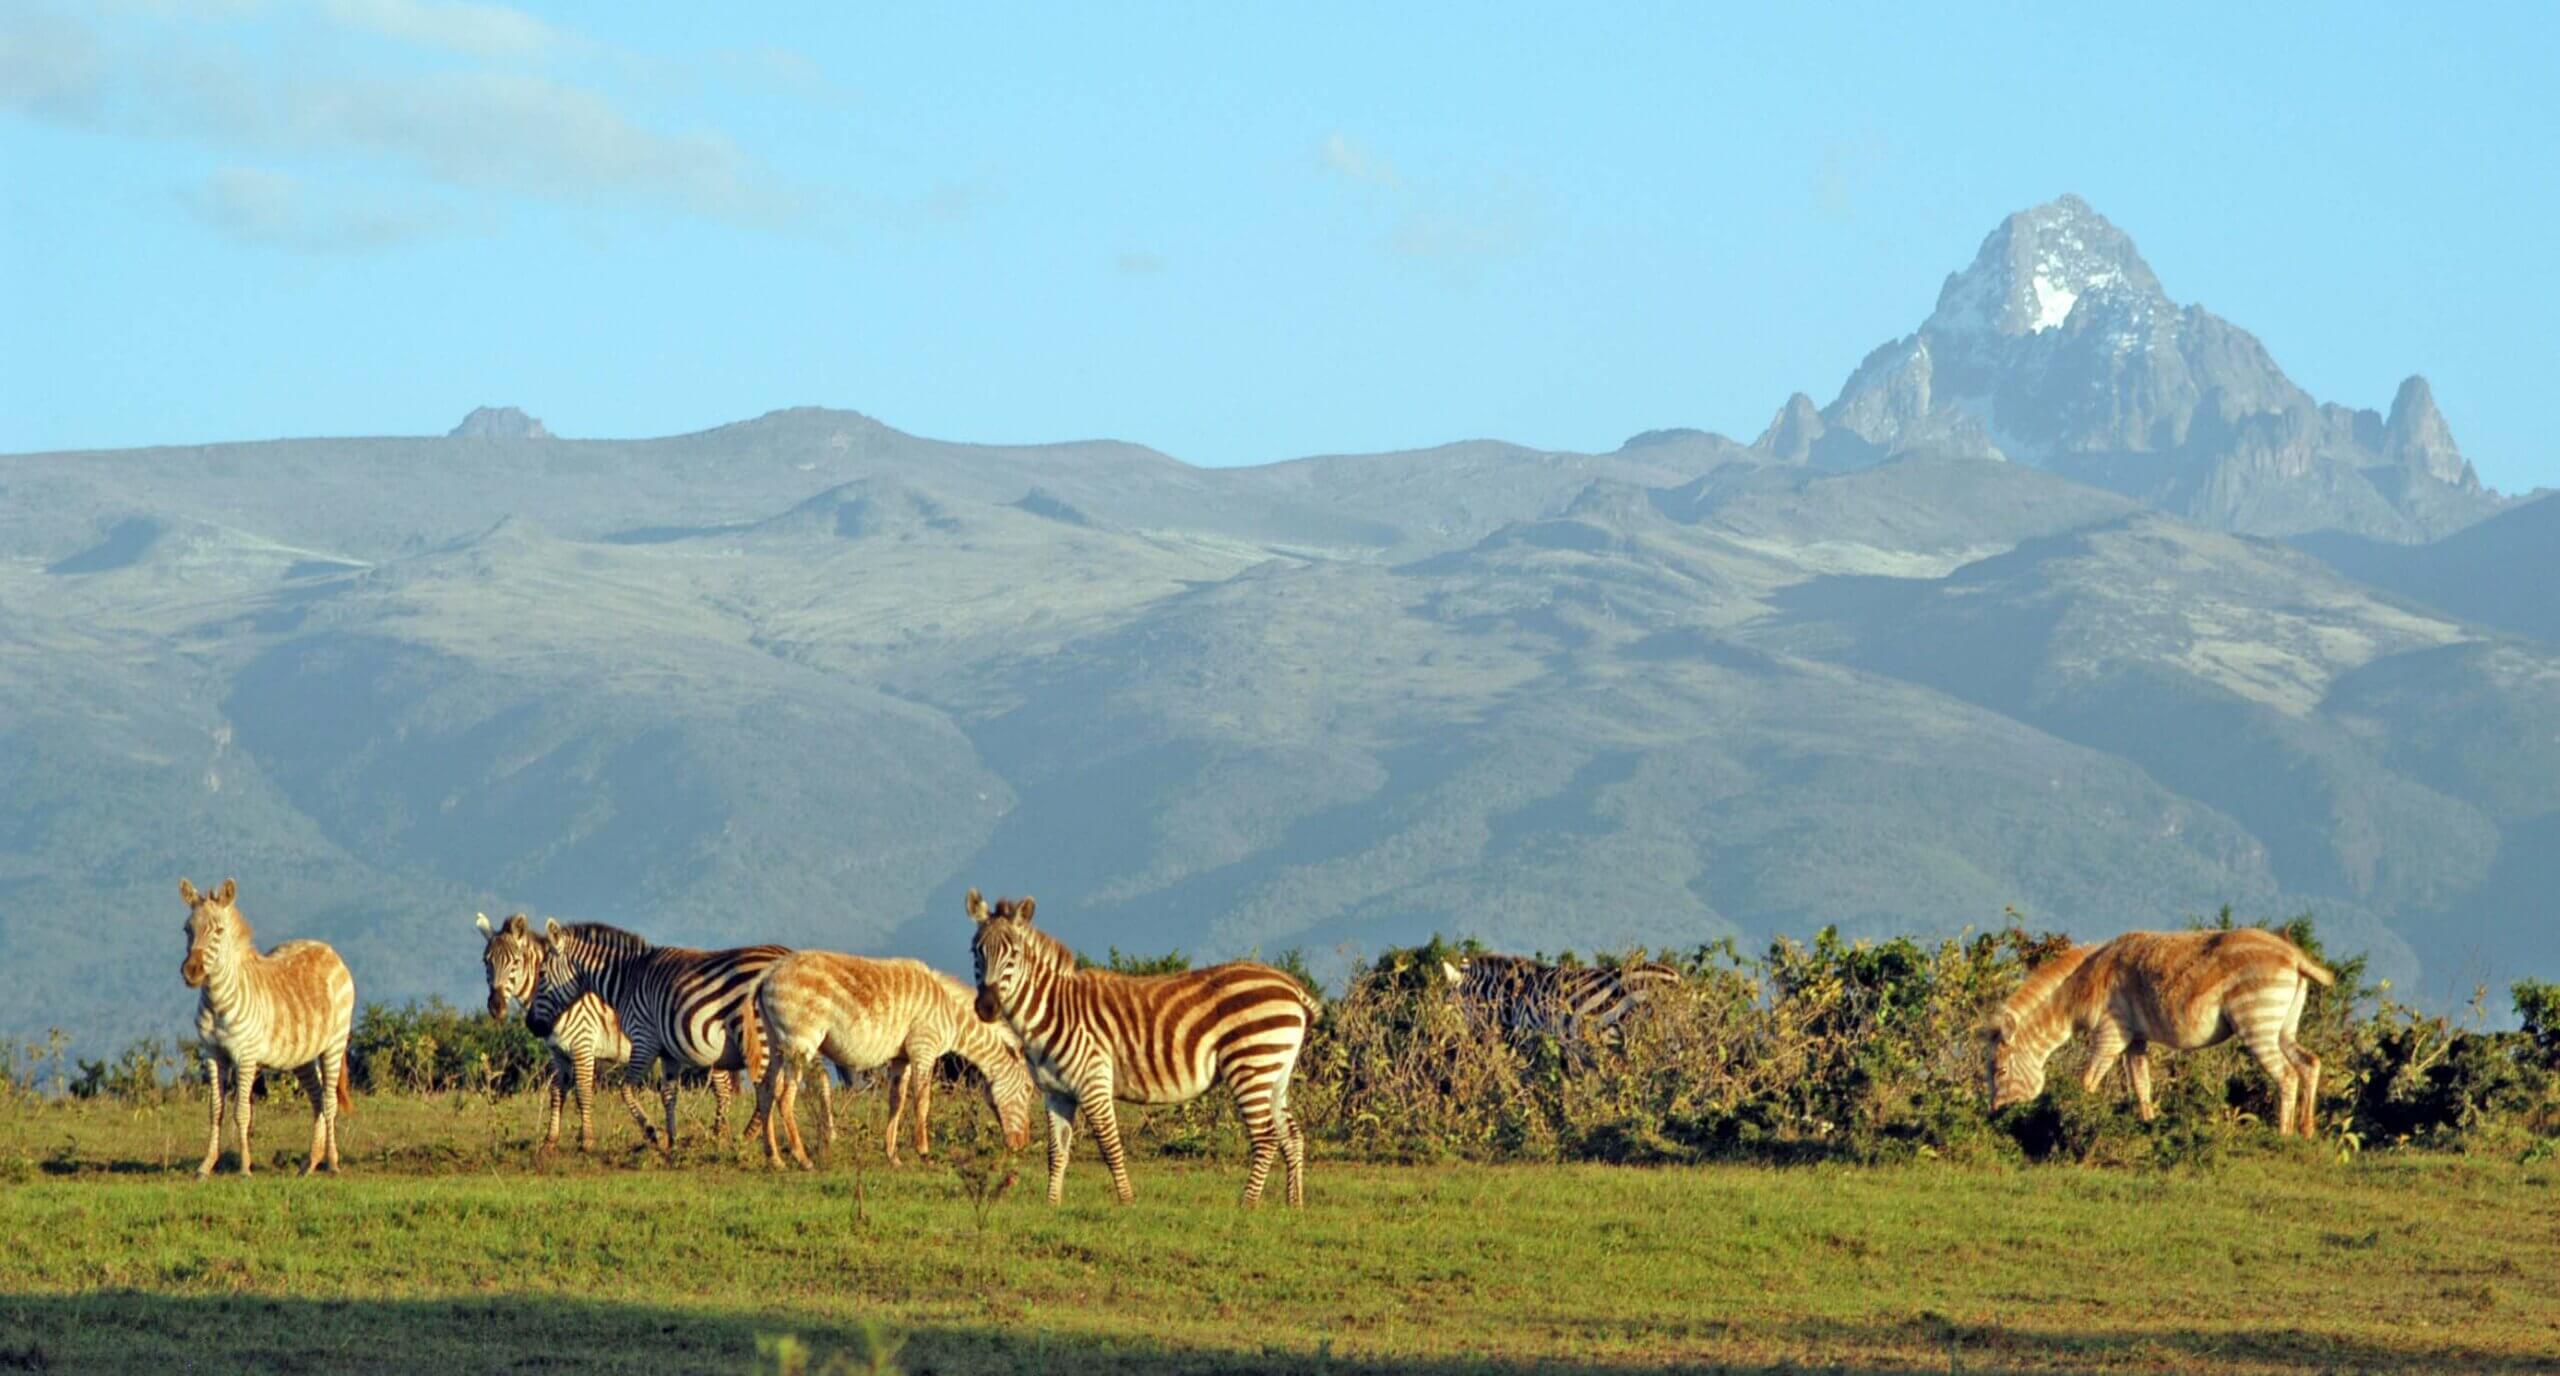 Mt Kenya National Park with zebra